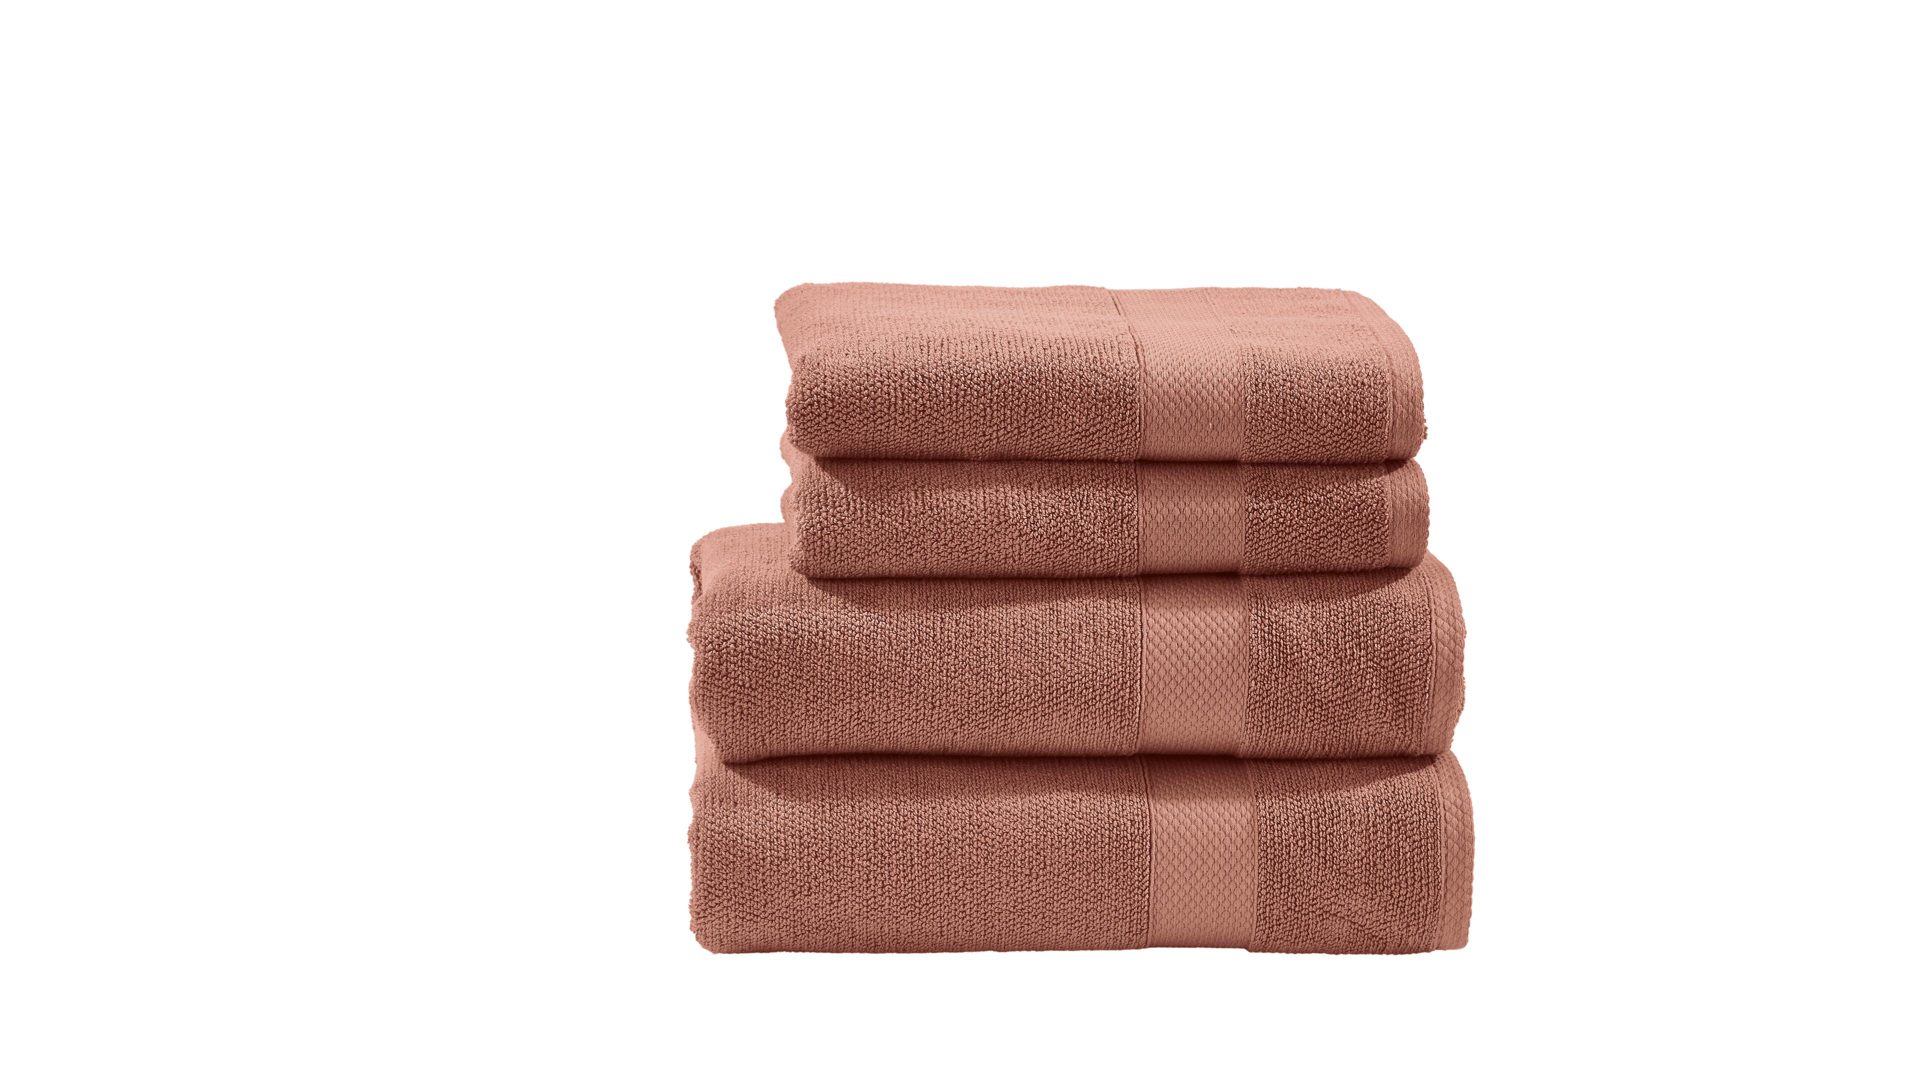 Handtuch-Set Done by karabel home company aus Stoff in Rot done Handtuch-Set Deluxe - Heimtextilien wüstensandfarbene Baumwolle – vierteilig